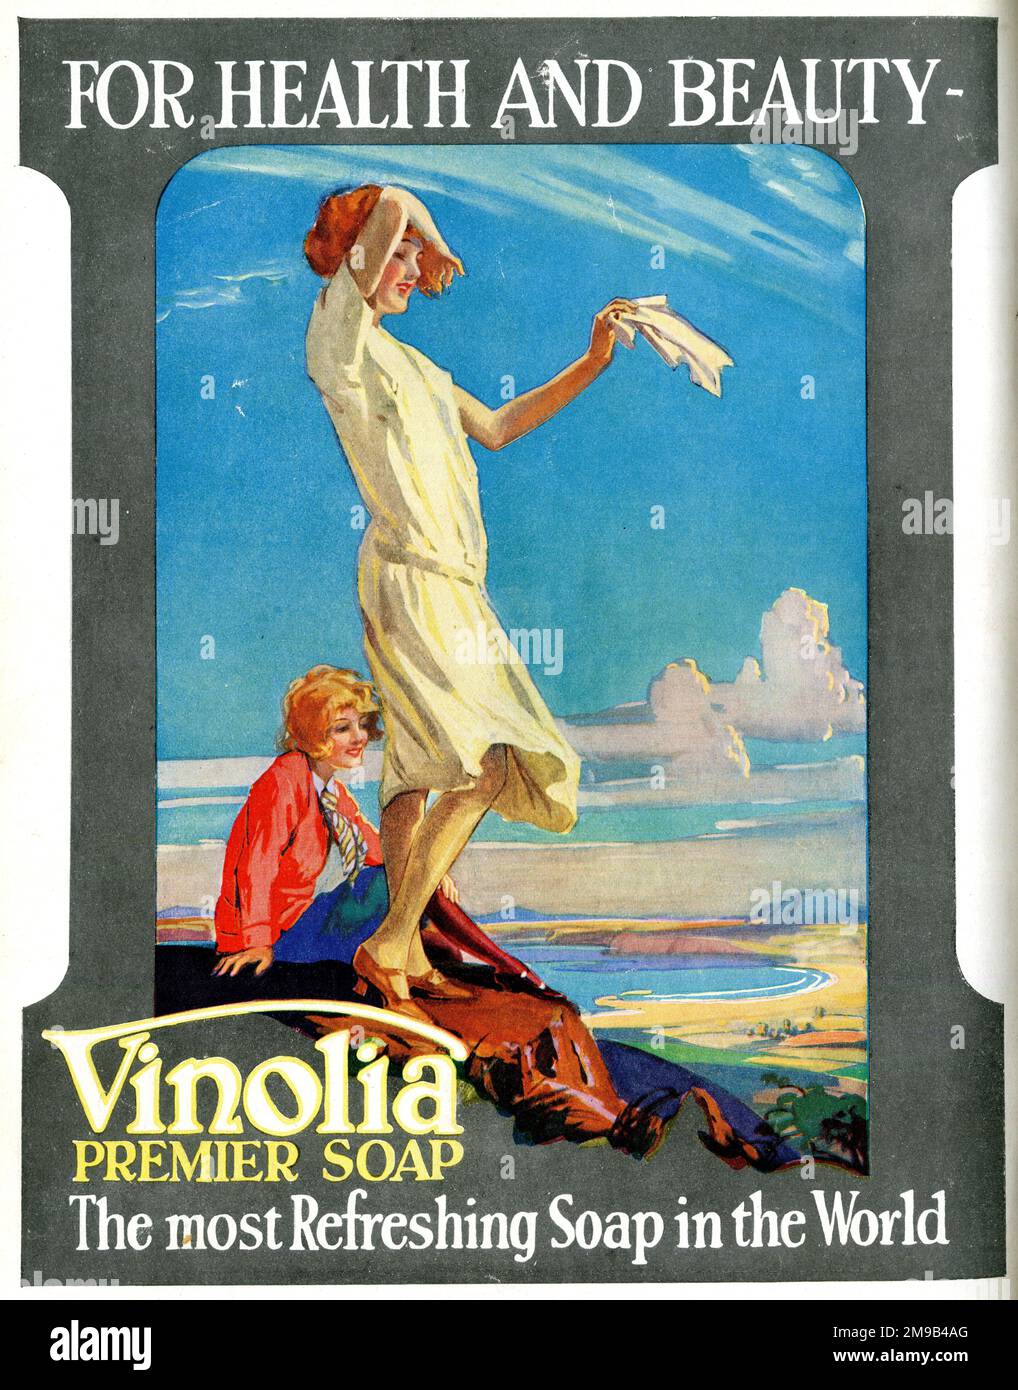 Jabón Vinolia Premier para la salud y la belleza, el jabón más refrescante del mundo. Foto de stock